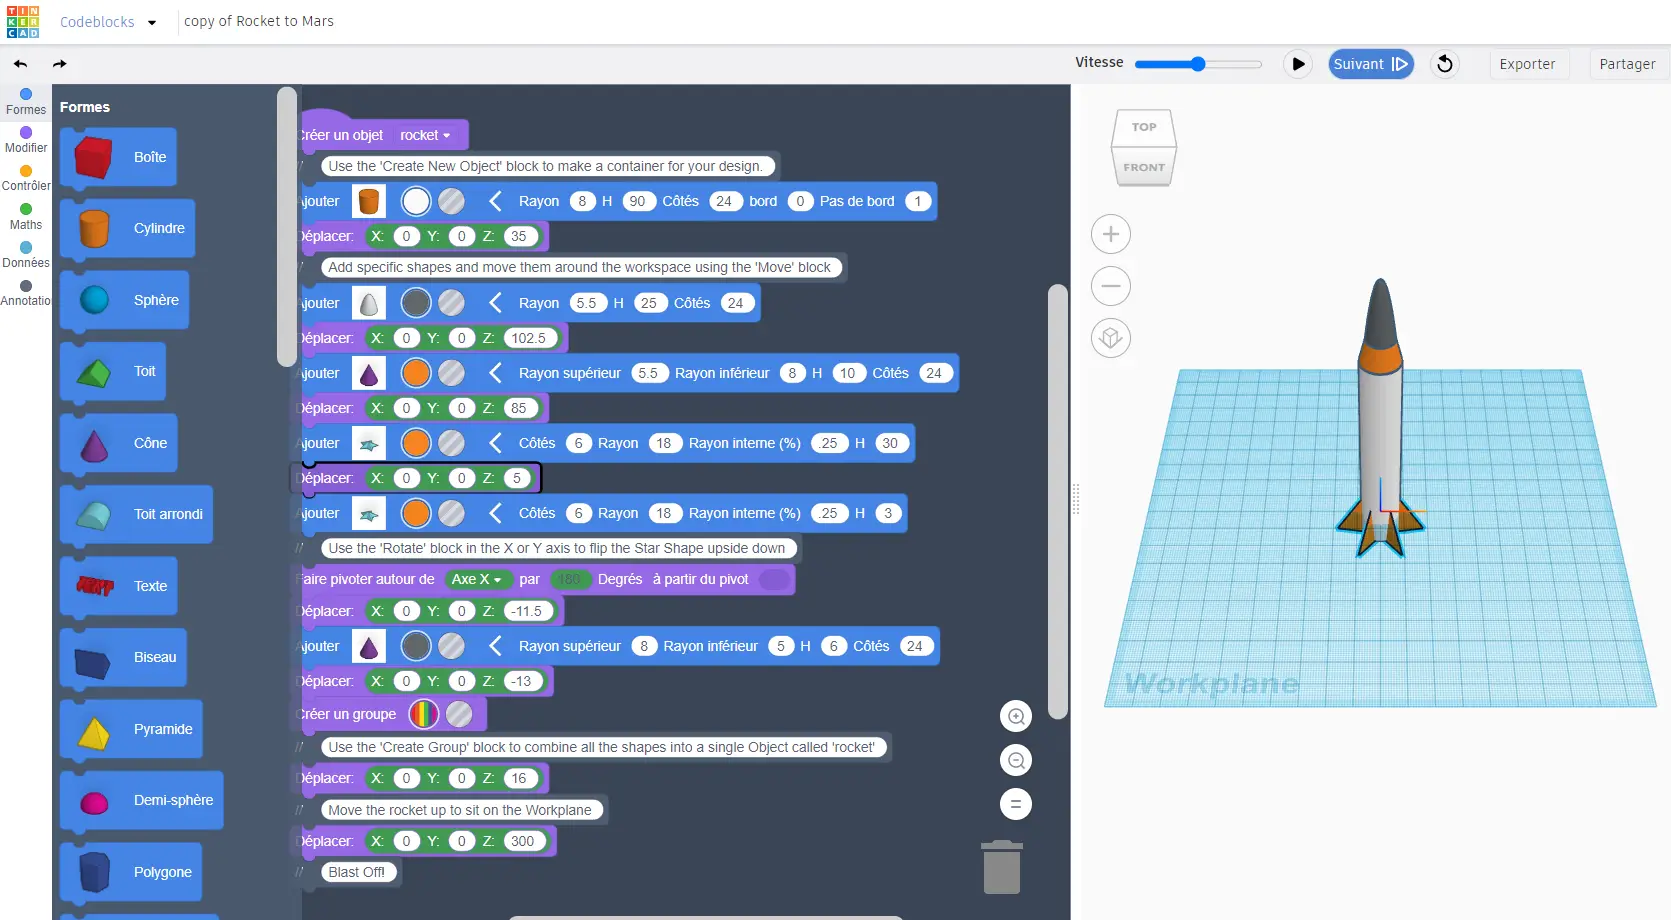 Capture d'écran de l'application gratuite Tinkecad. La section Codeblocks permettant de coder un dessin en 3 dimensions.